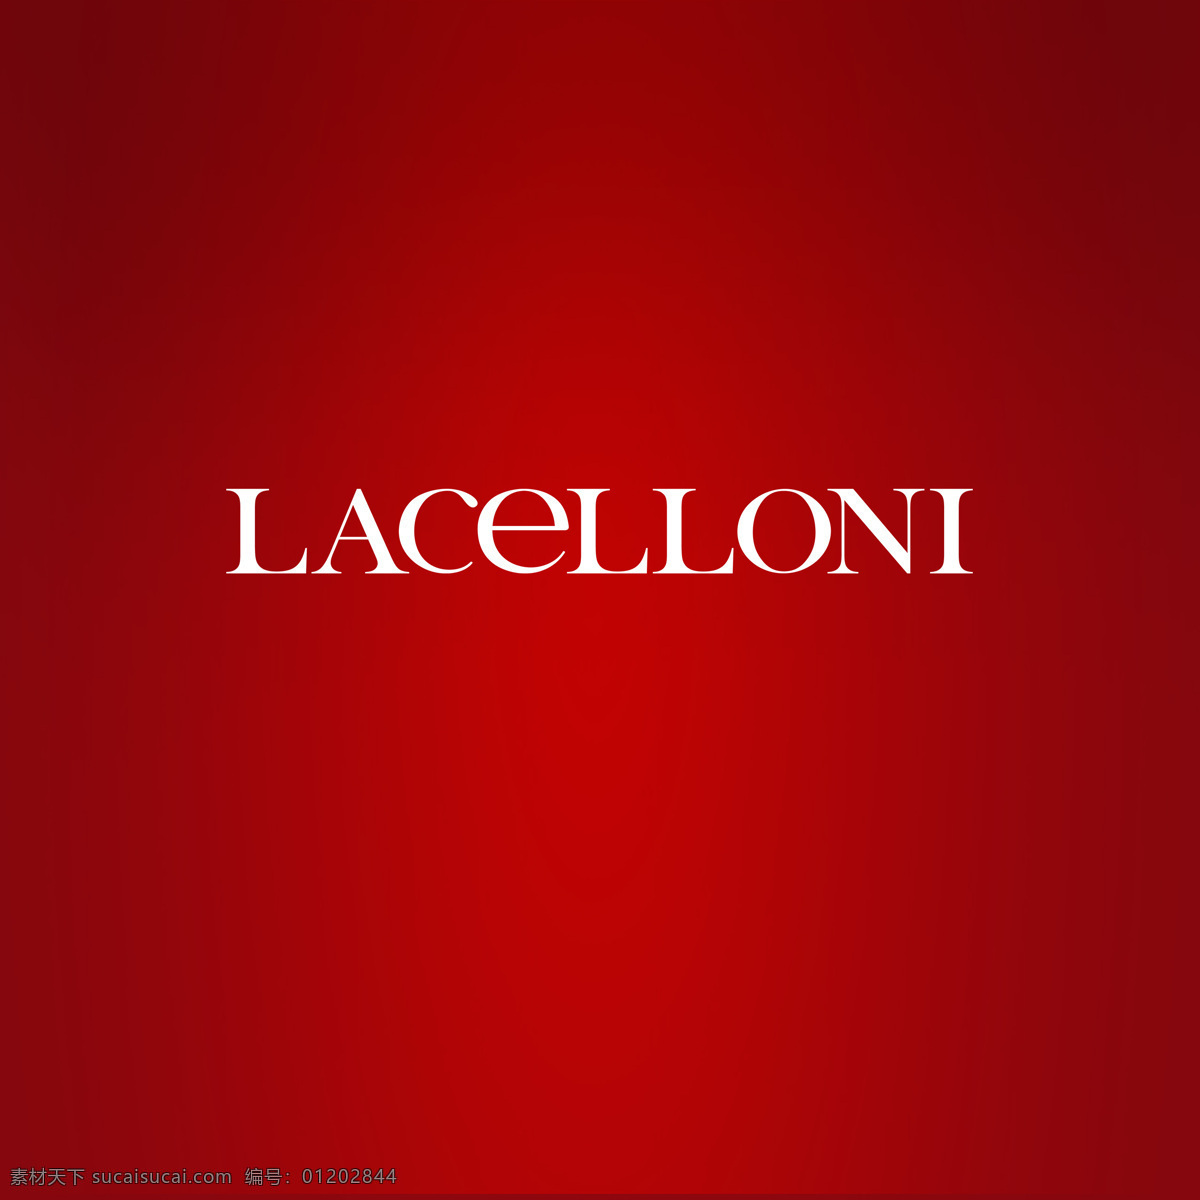 莱科 妮 logo 莱科妮 红色背景 背景 化妆品 底纹边框 背景底纹